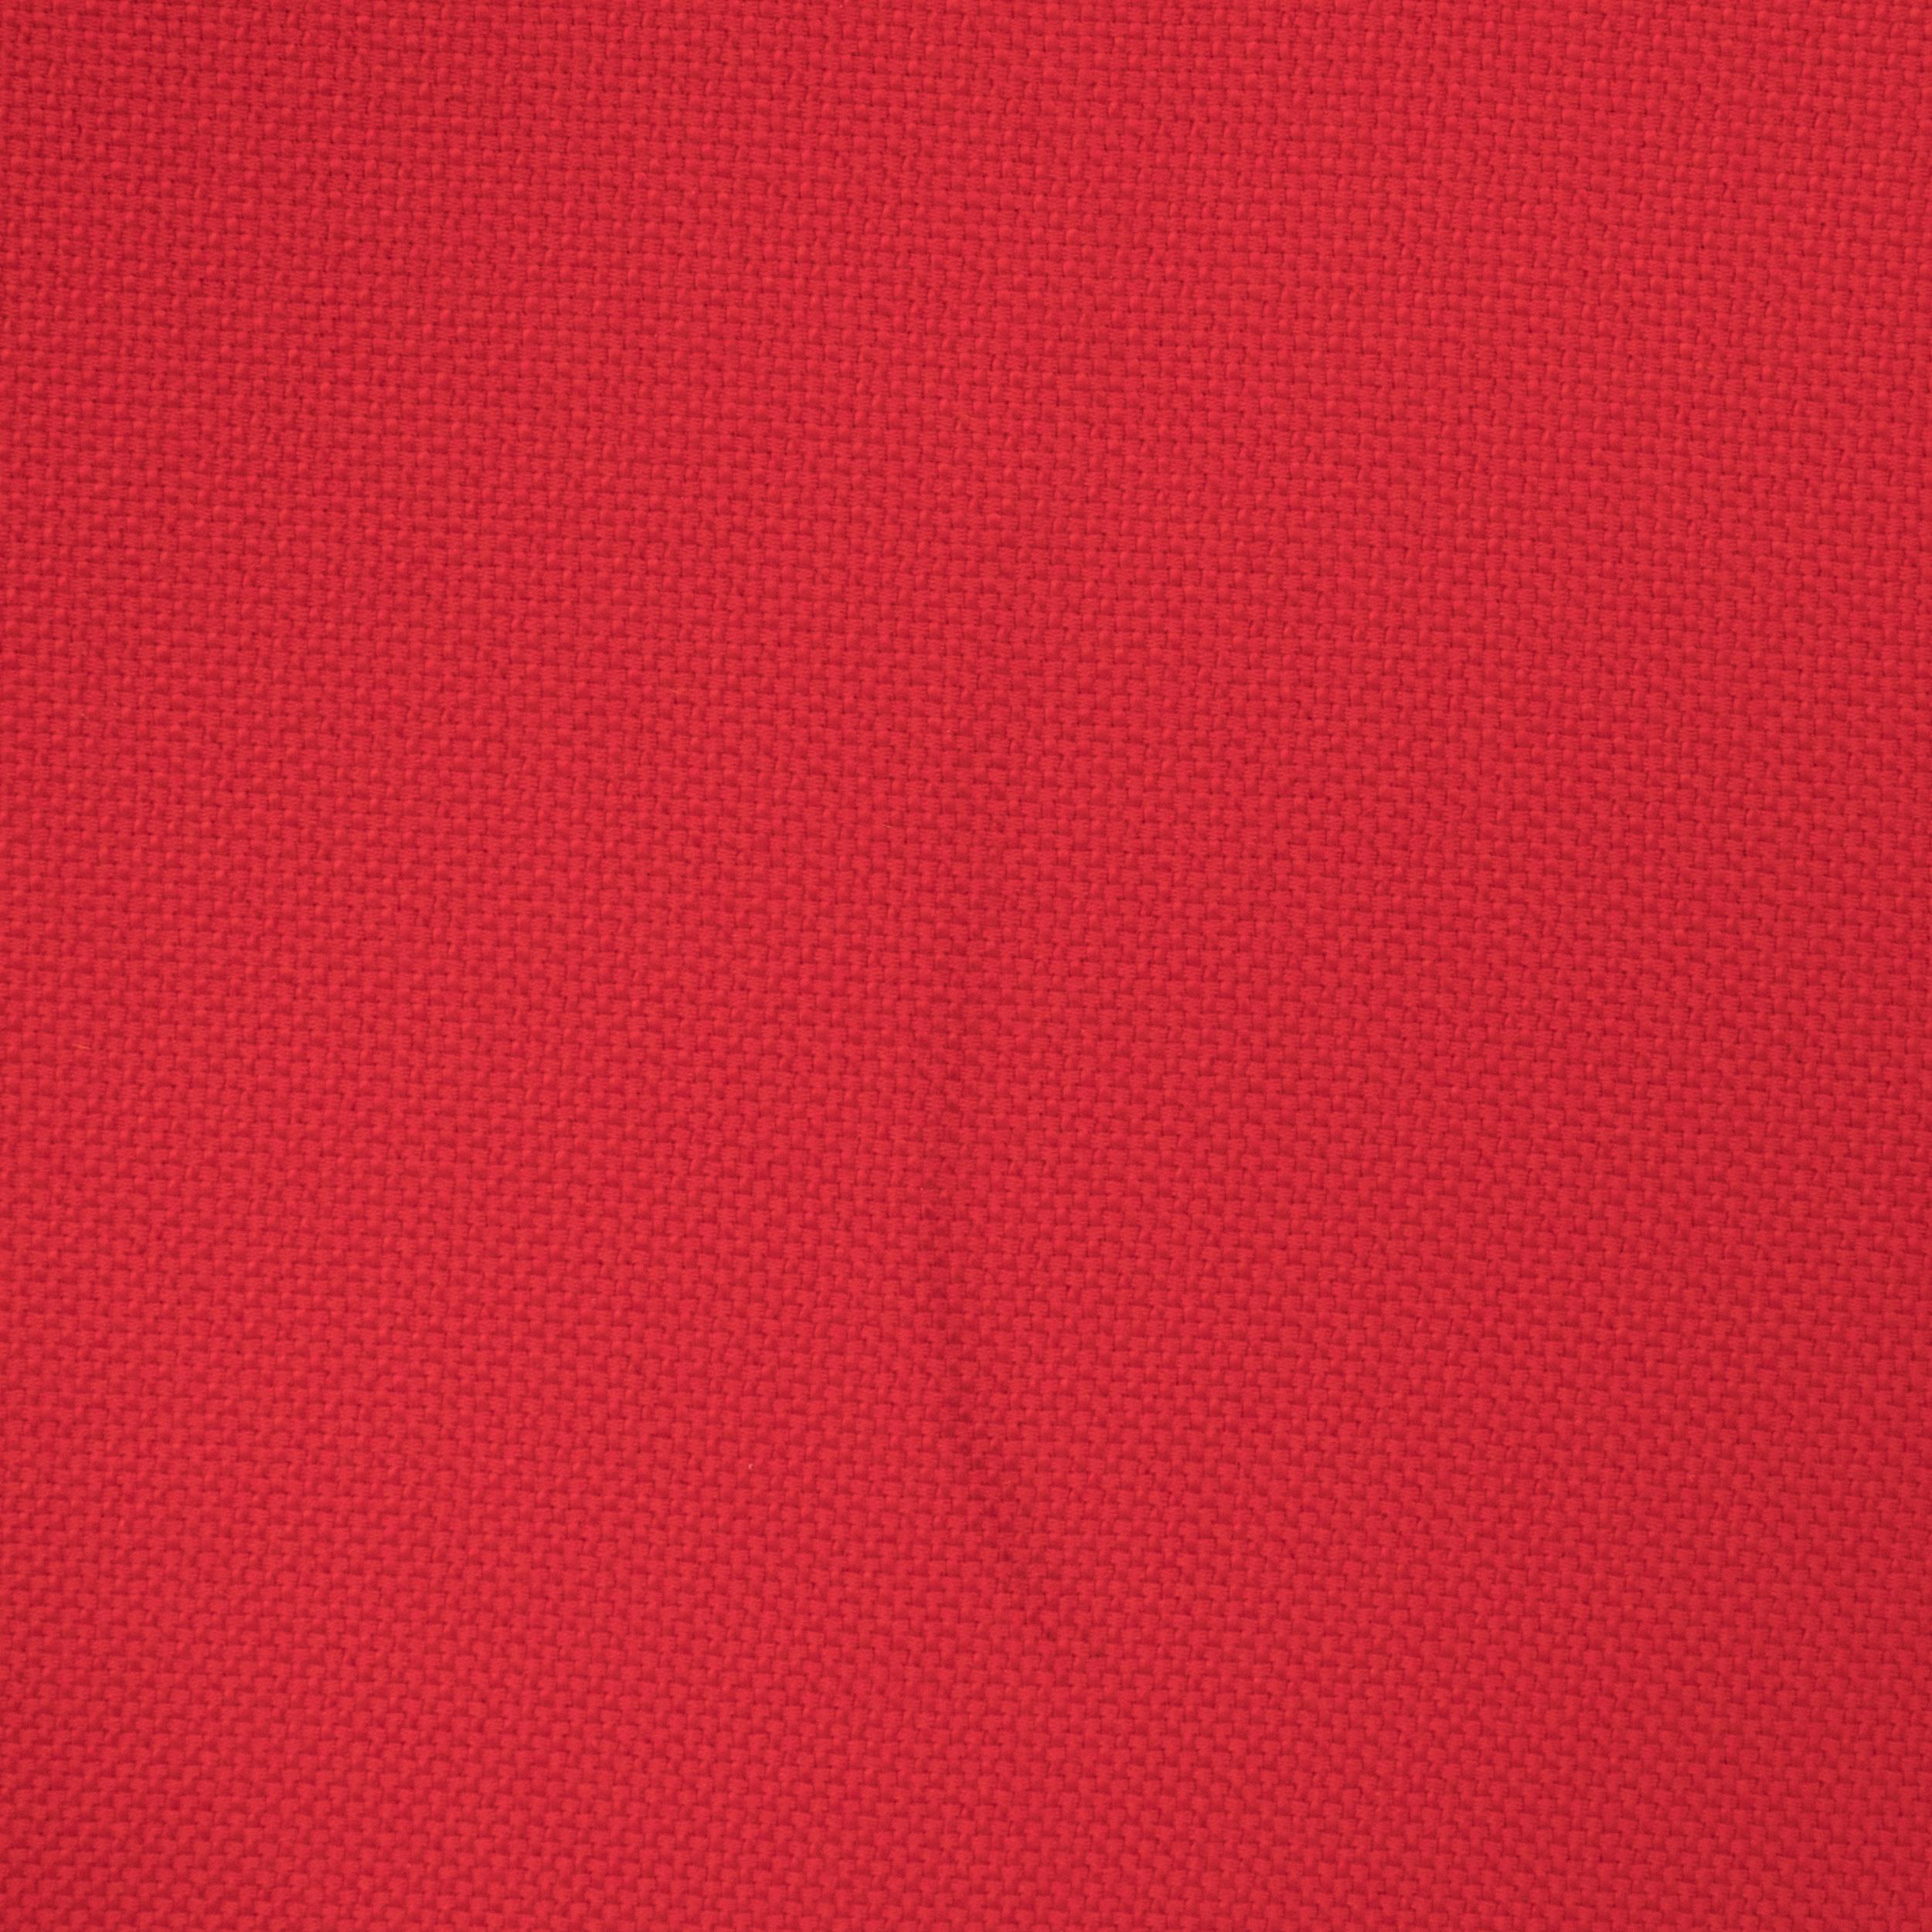 Fabric Knoll by Eero Saarinen Womb Medium Red Armchair